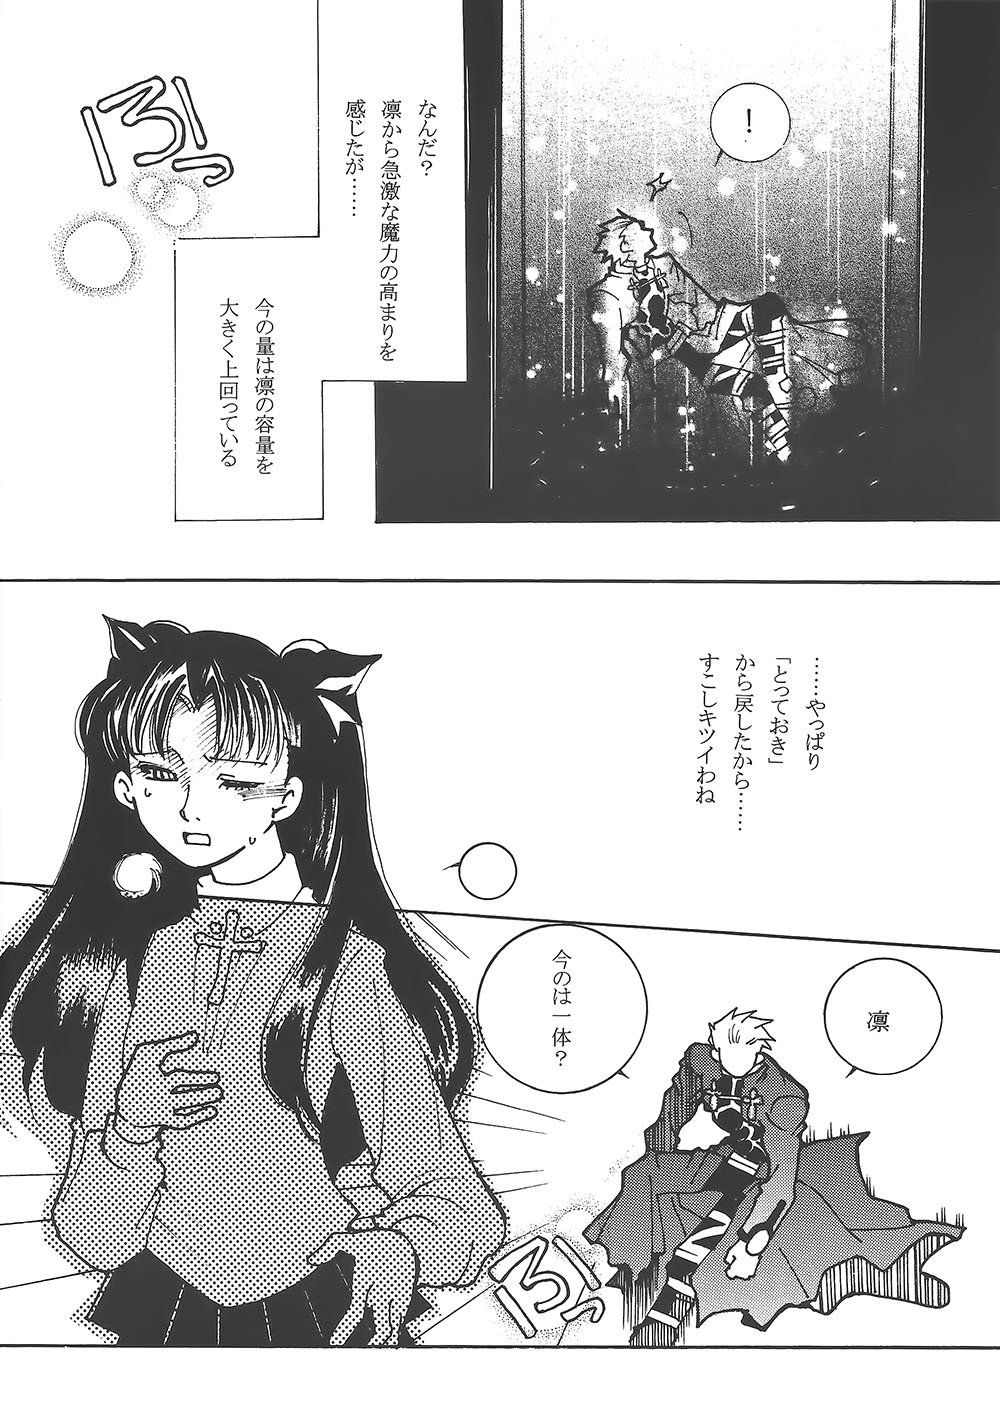 (みみけっと10) [Battle Princess (武士堂トモコ、FNI)] 宝石姫と赤い騎士 (Fate/stay night)